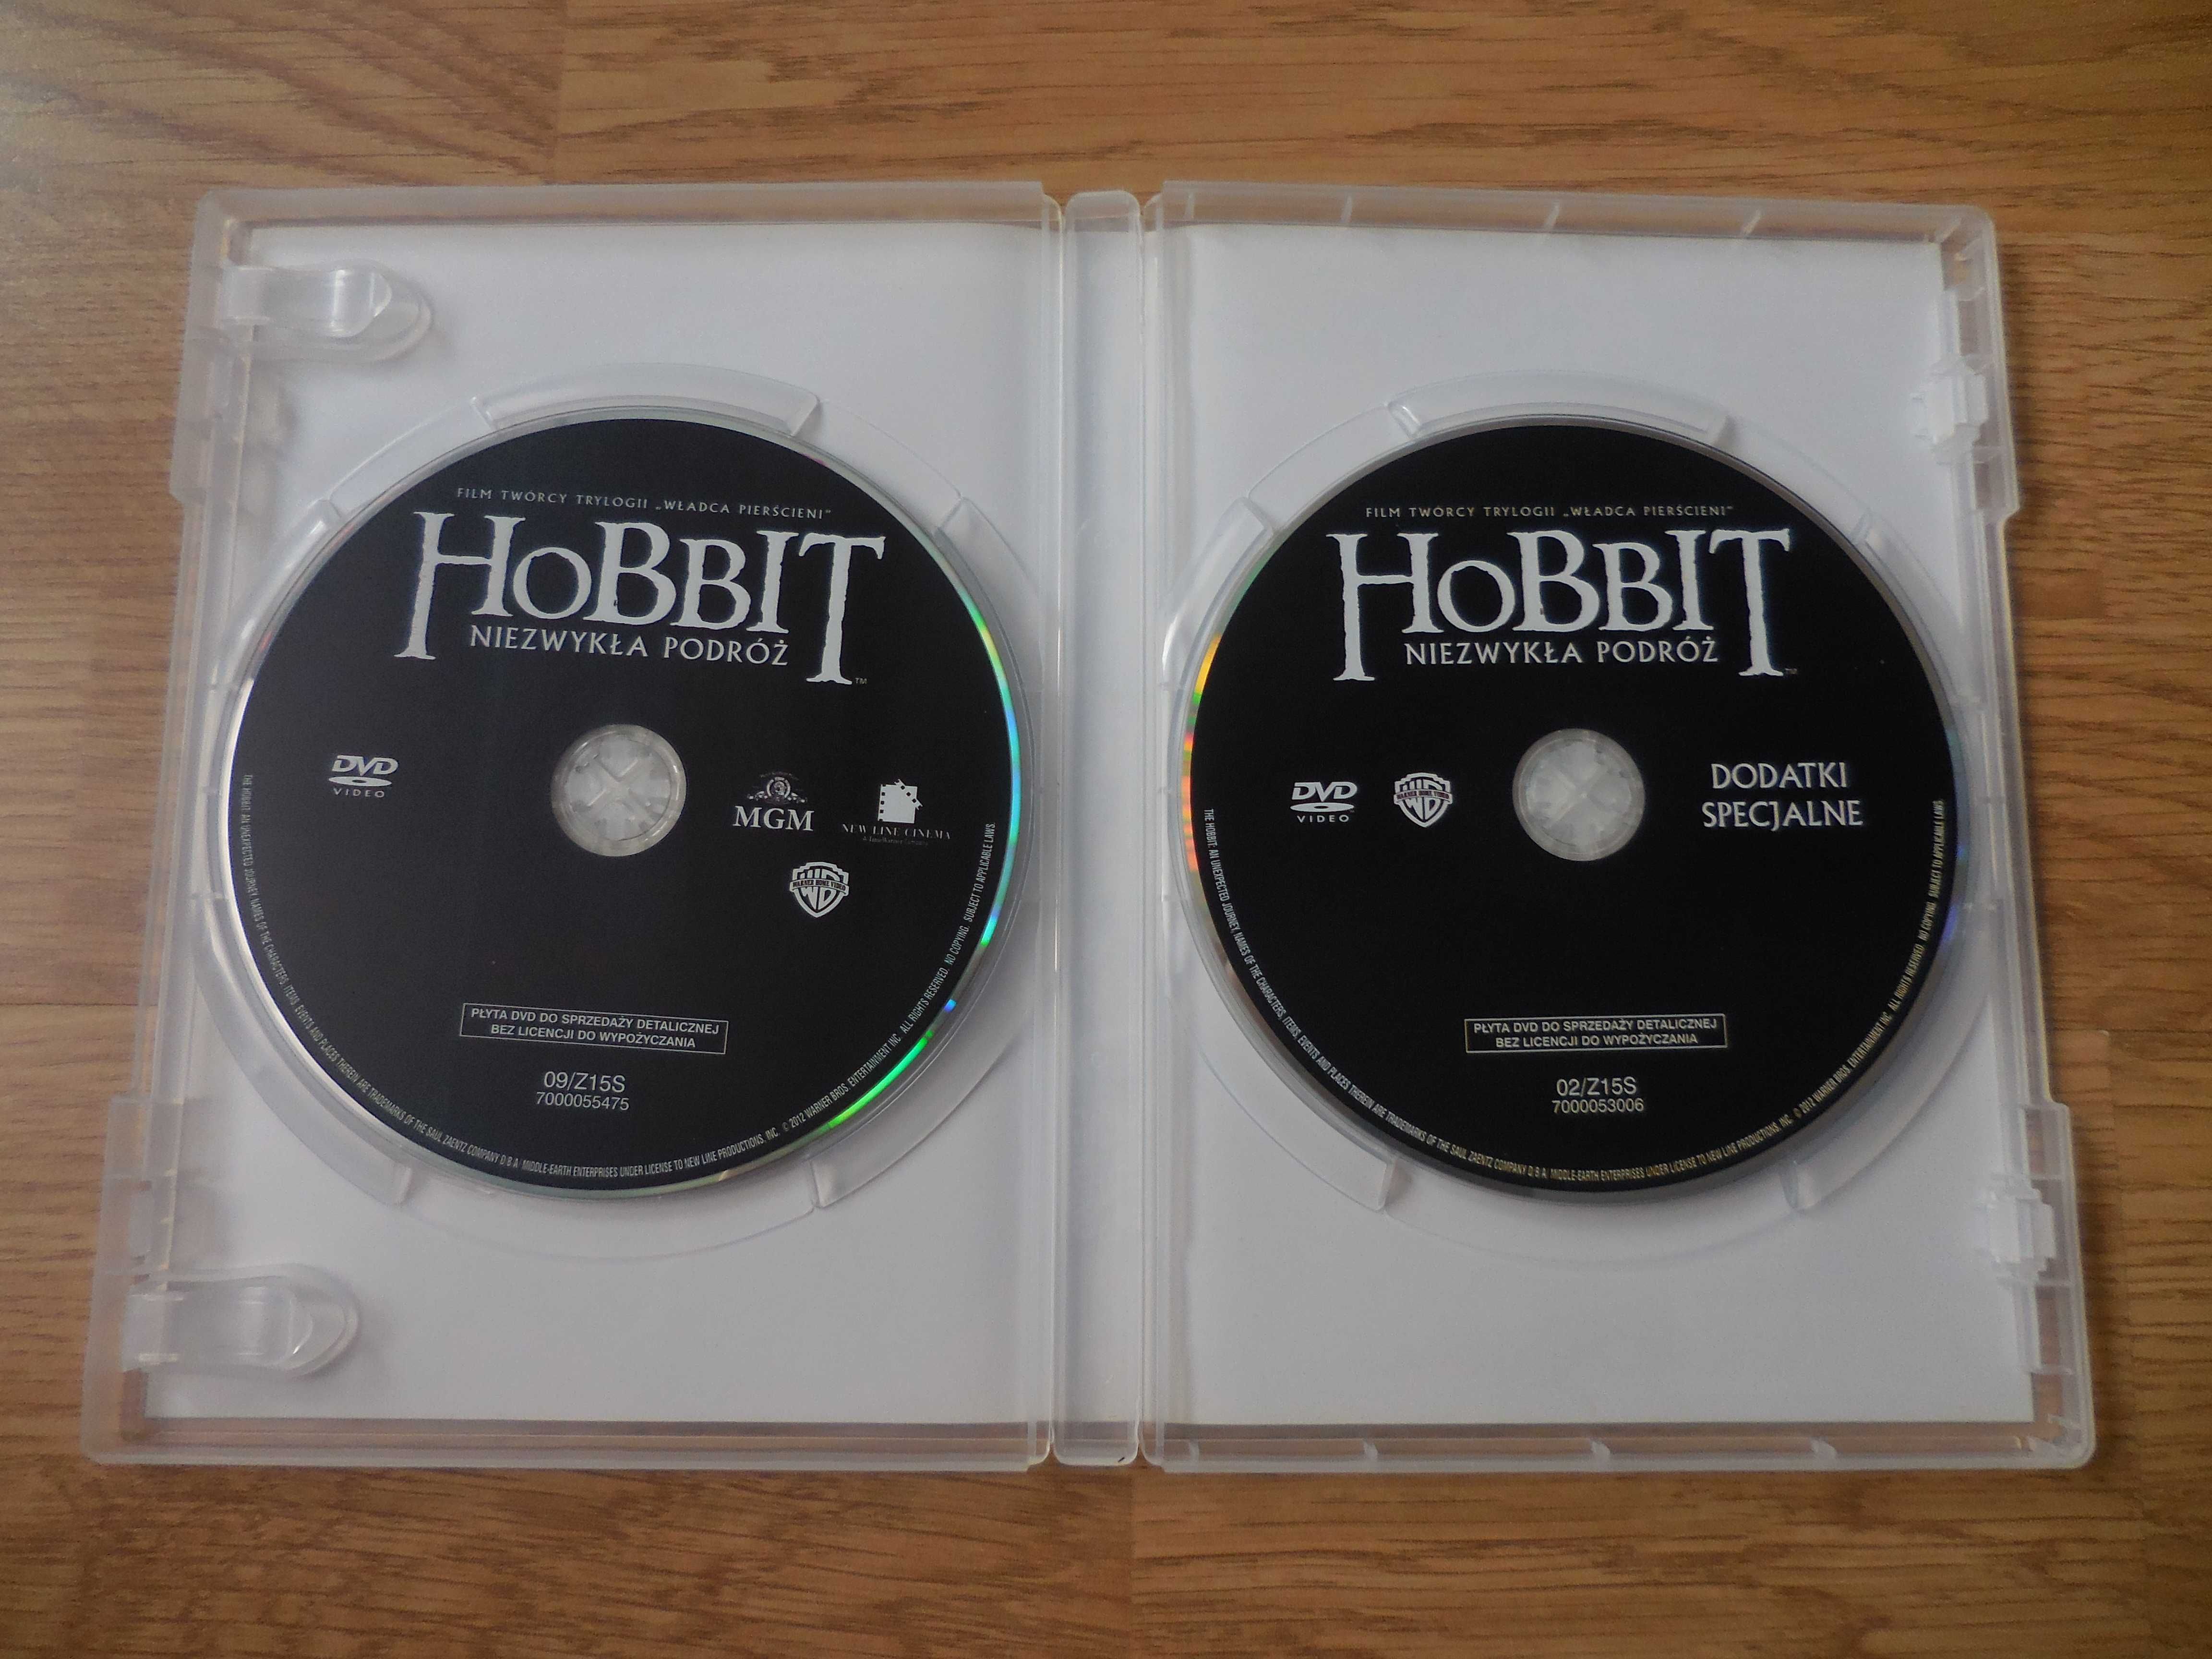 HOBBIT 'Niezwykła podróż' 2 płytowa edycja specjalna